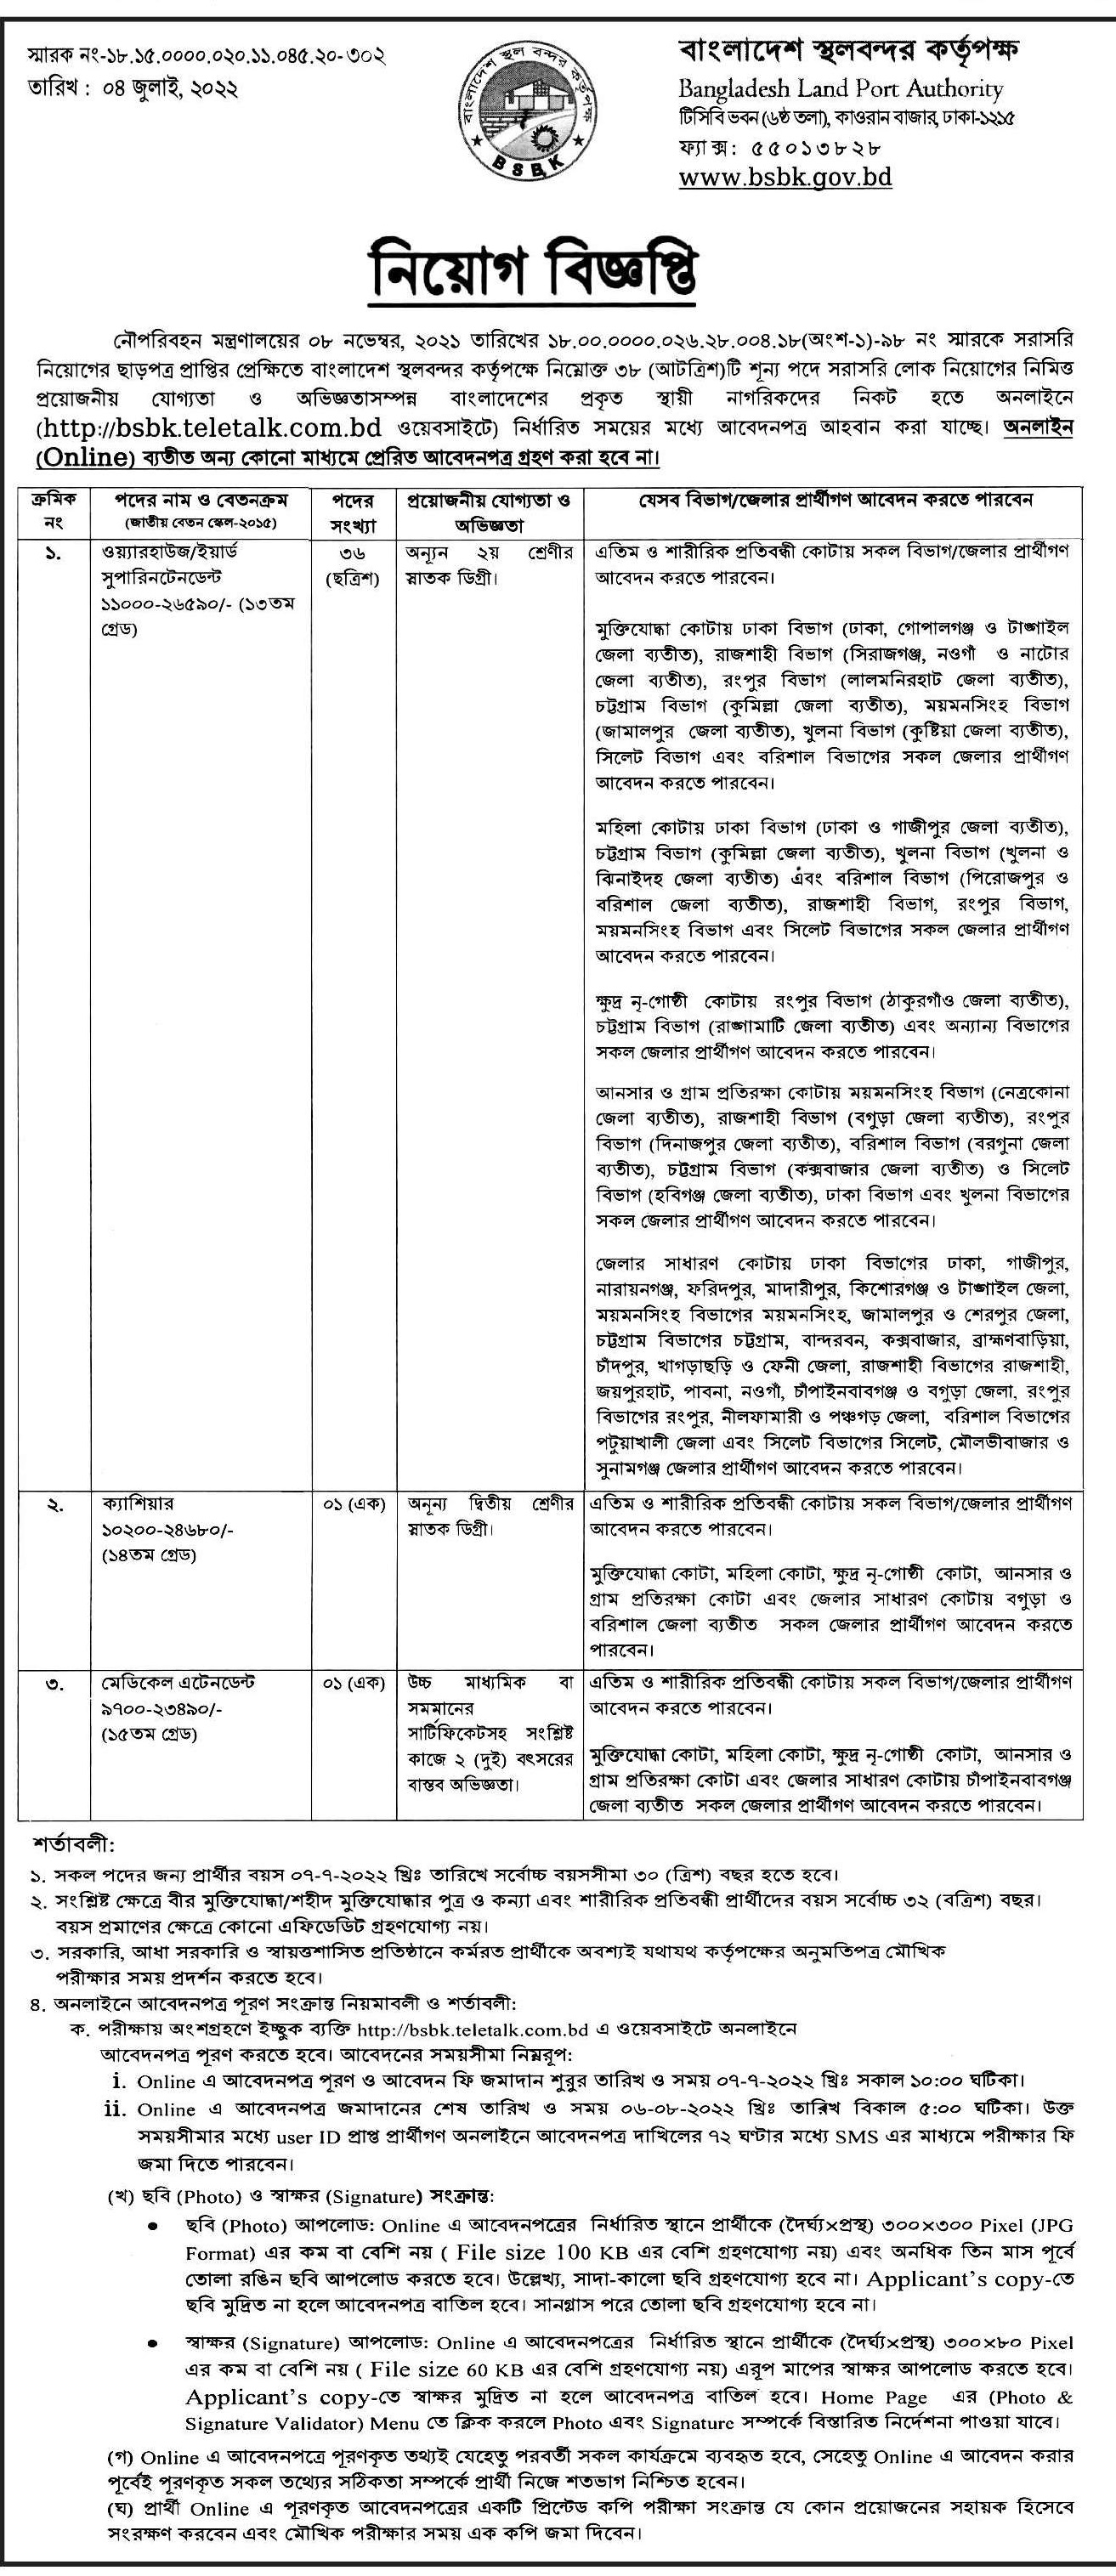 BSBK Job Circular 2023 - bsbk.teletalk.com.bd Apply